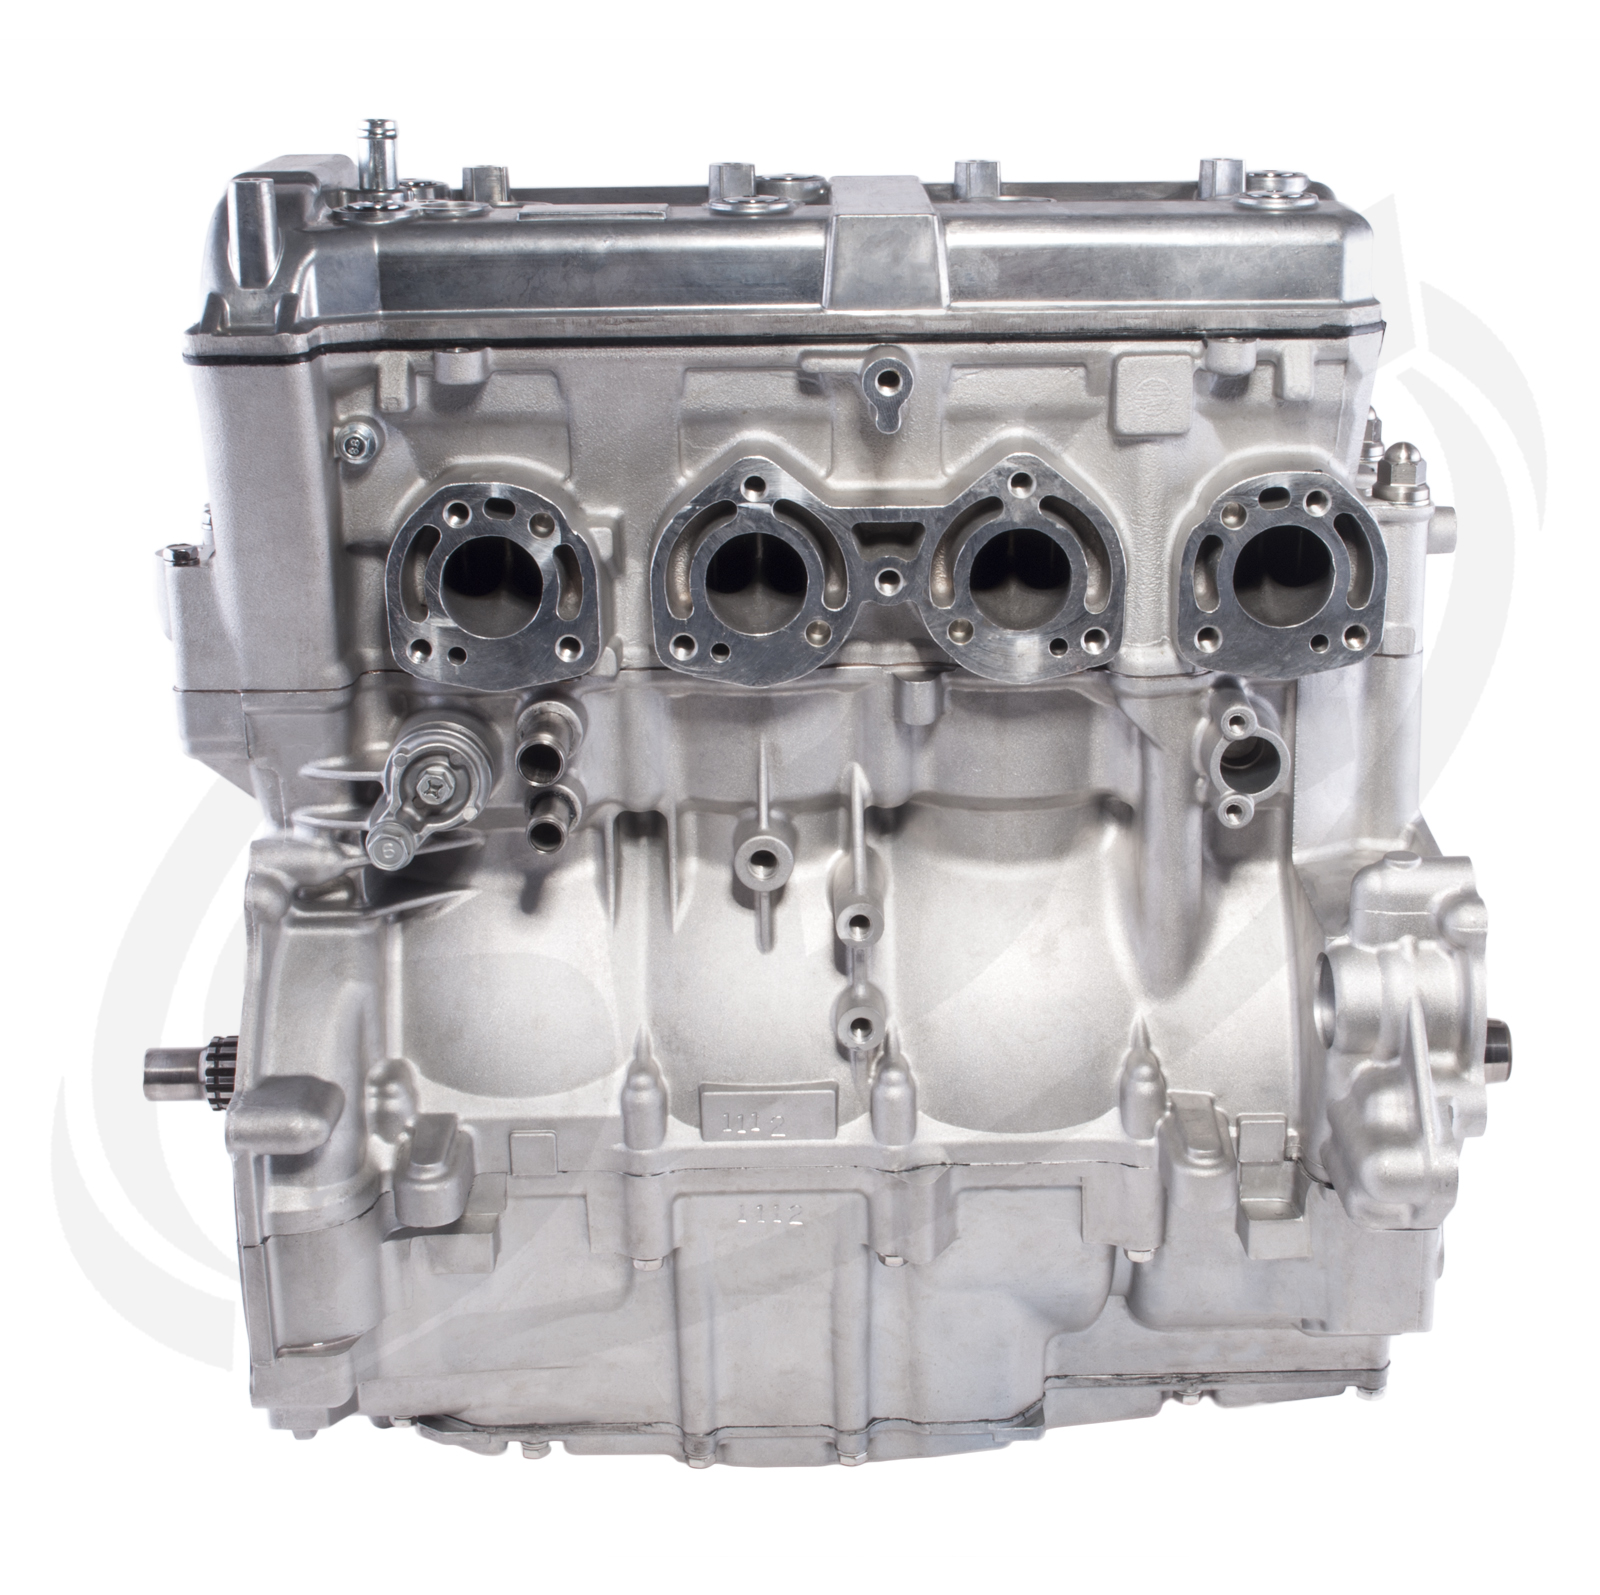 Fits Yamaha Engine FX 140 HO/ FX Cruiser HO/ AR230 HO/ SX230 HO